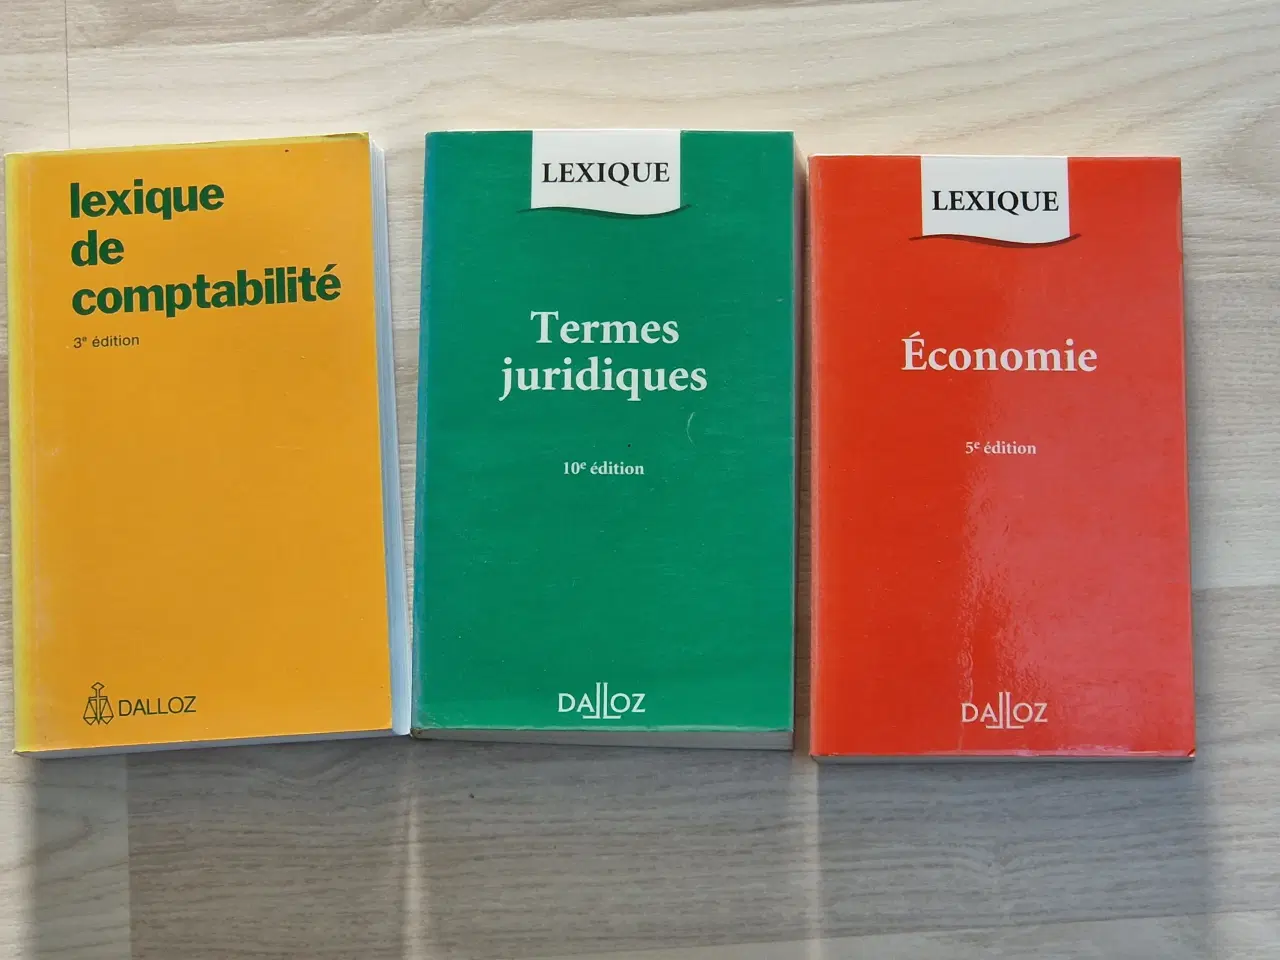 Billede 1 - Fransk Ordbøger